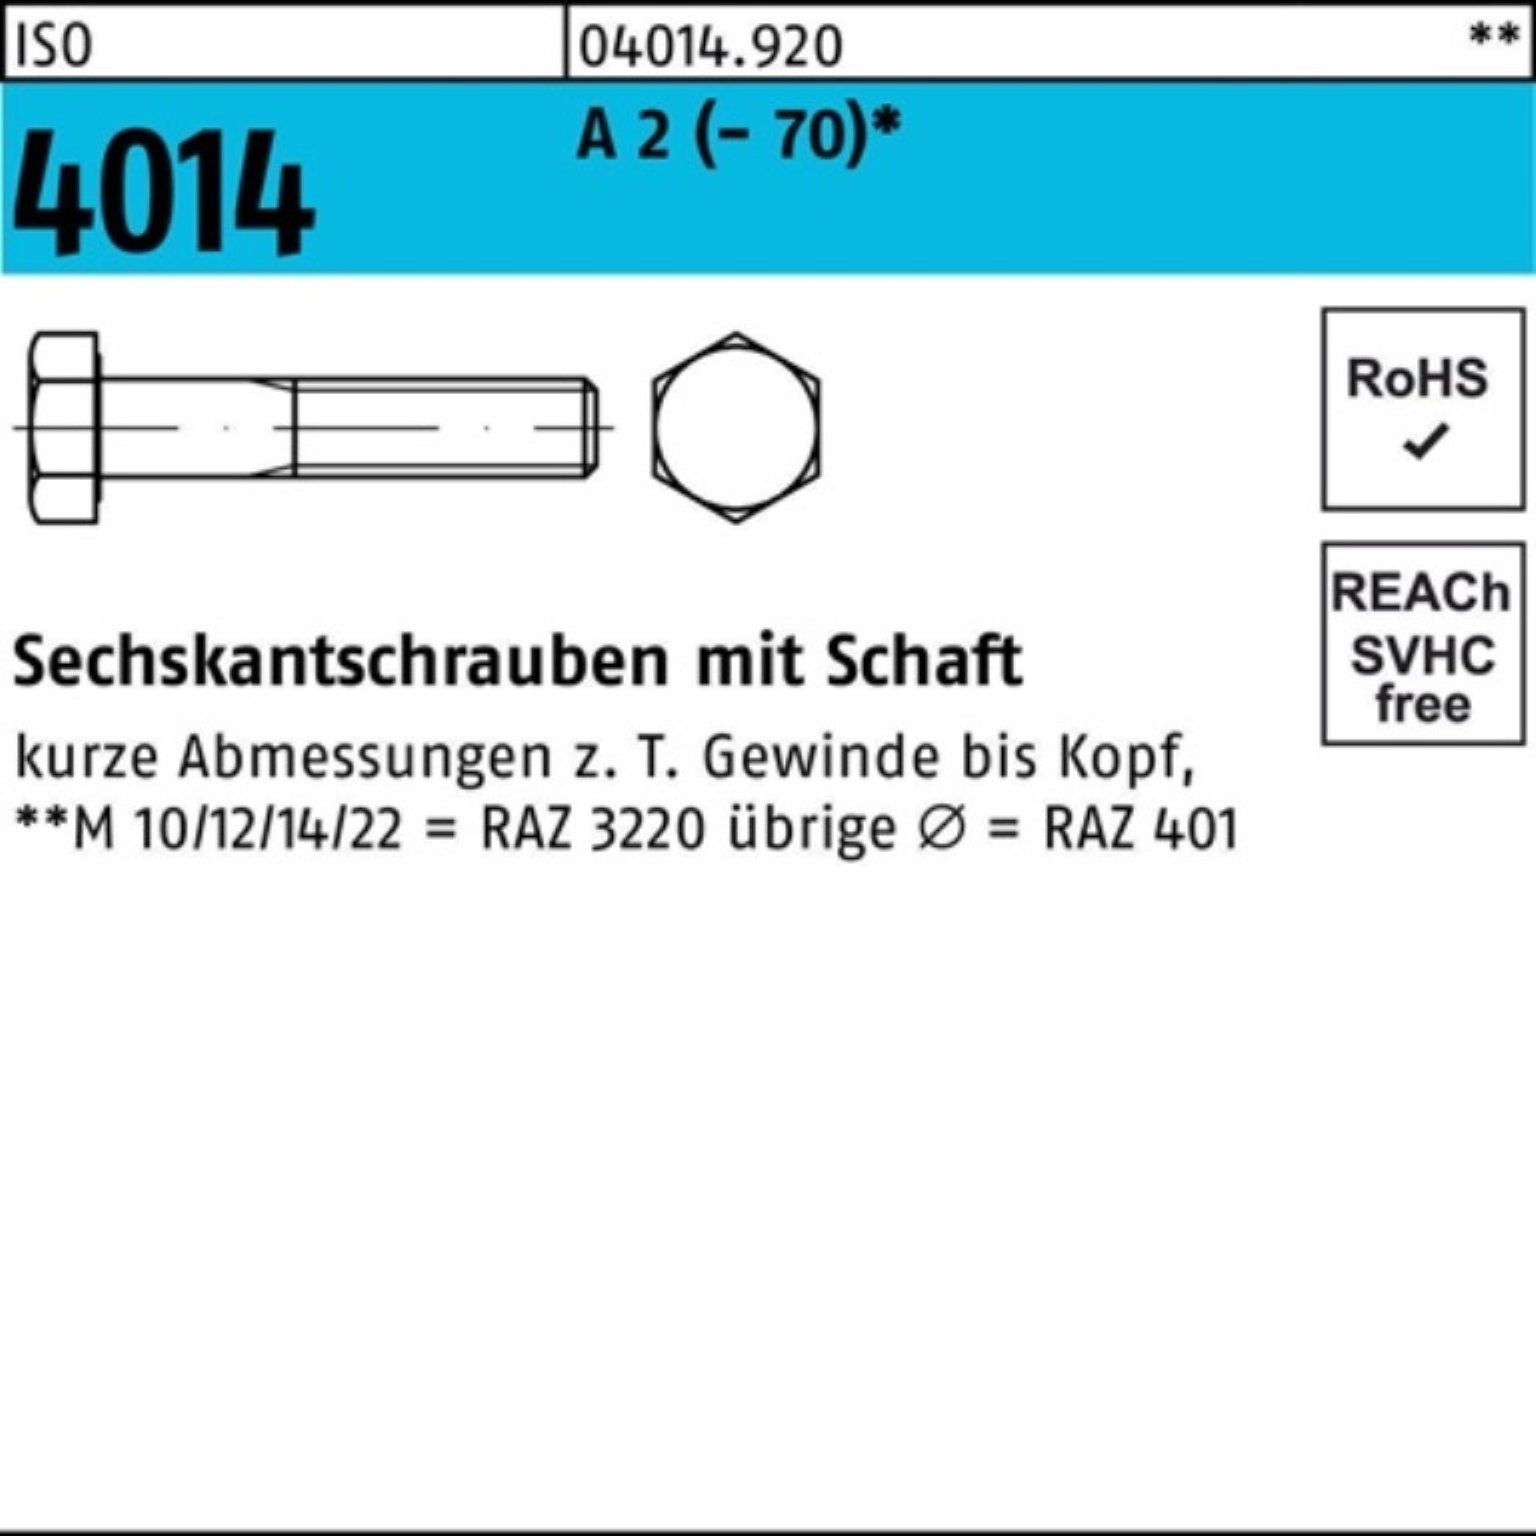 Bufab Sechskantschraube 100er Pack Sechskantschraube ISO 4014 Schaft M5x 55 A 2 (70) 100 St